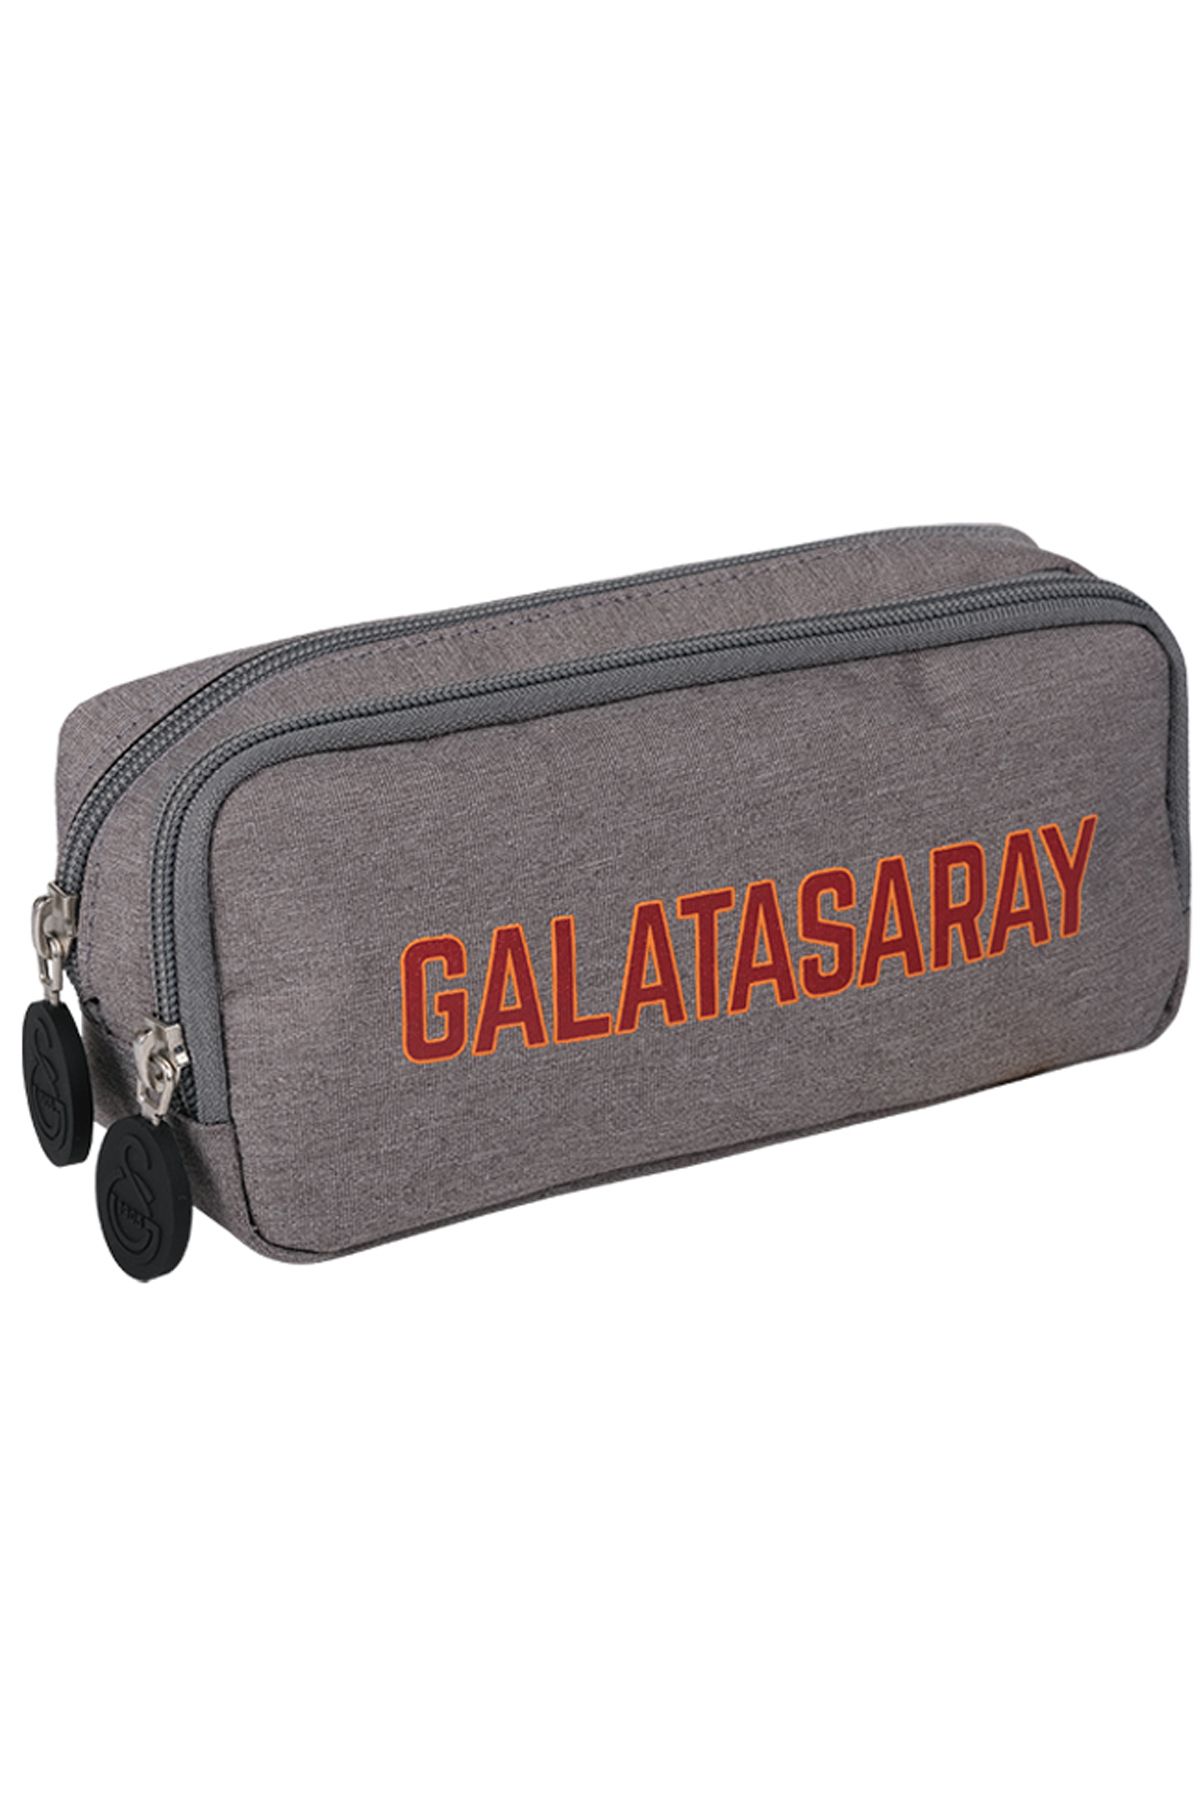 Galatasaray Silver Şerit Gri Kalem Çantası 24541 Kalemlik